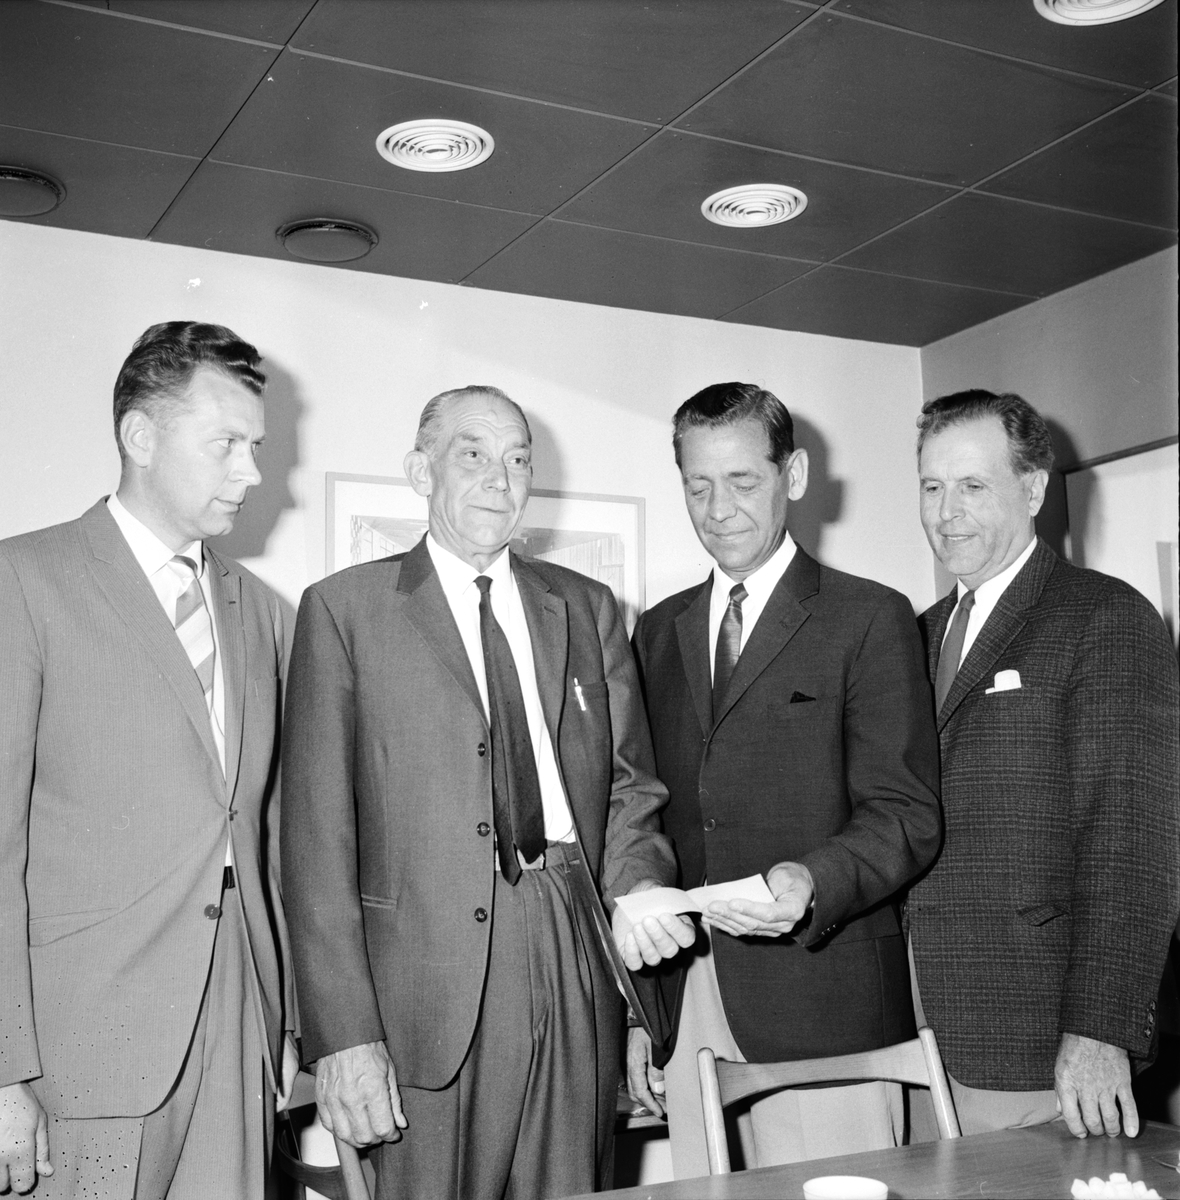 Brandförsäkringsskydd. Pengar till brandbrunnen.
Bertil Nyberg, Erik Persson, H Bjerkelindh, Sidfrid Hansson.
10/6-1966